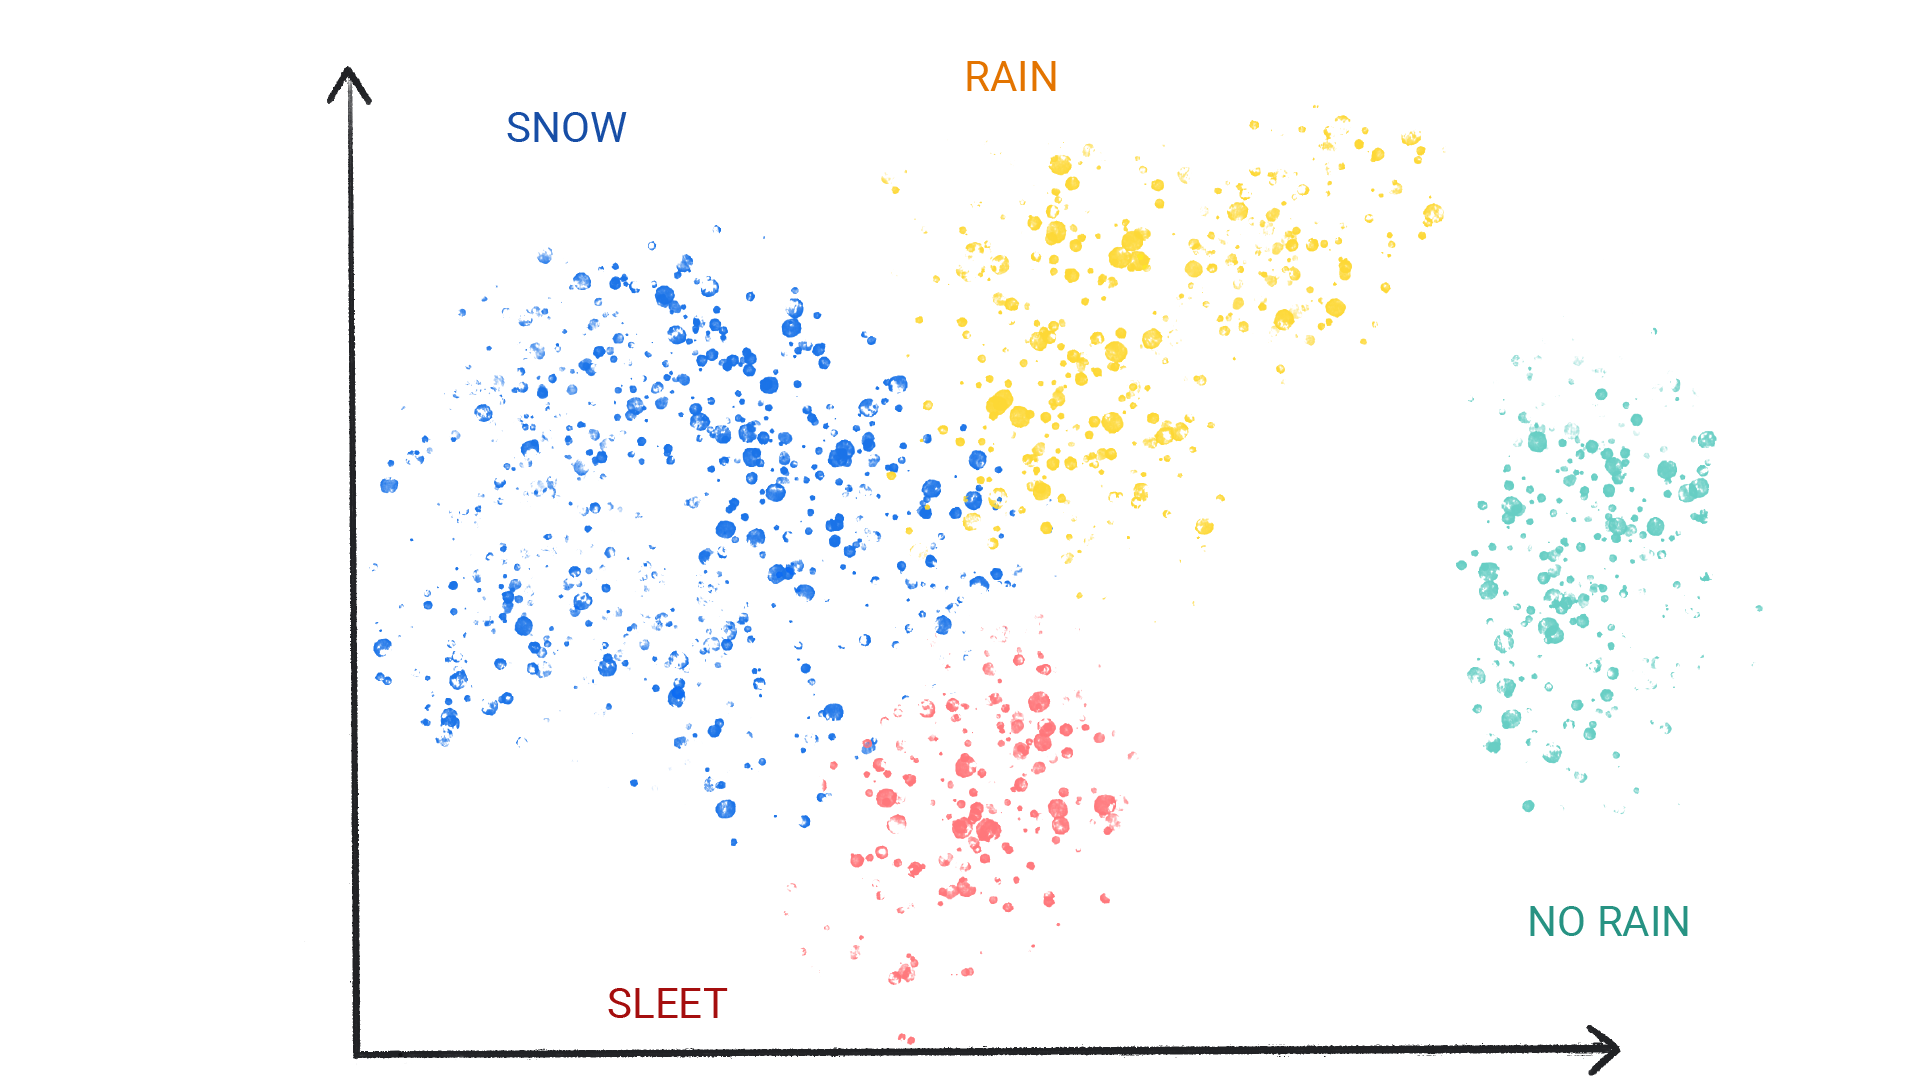 تصویری که نقاط رنگی را در خوشه‌هایی نشان می‌دهد که برف، باران، تگرگ و بدون باران برچسب‌گذاری شده‌اند.